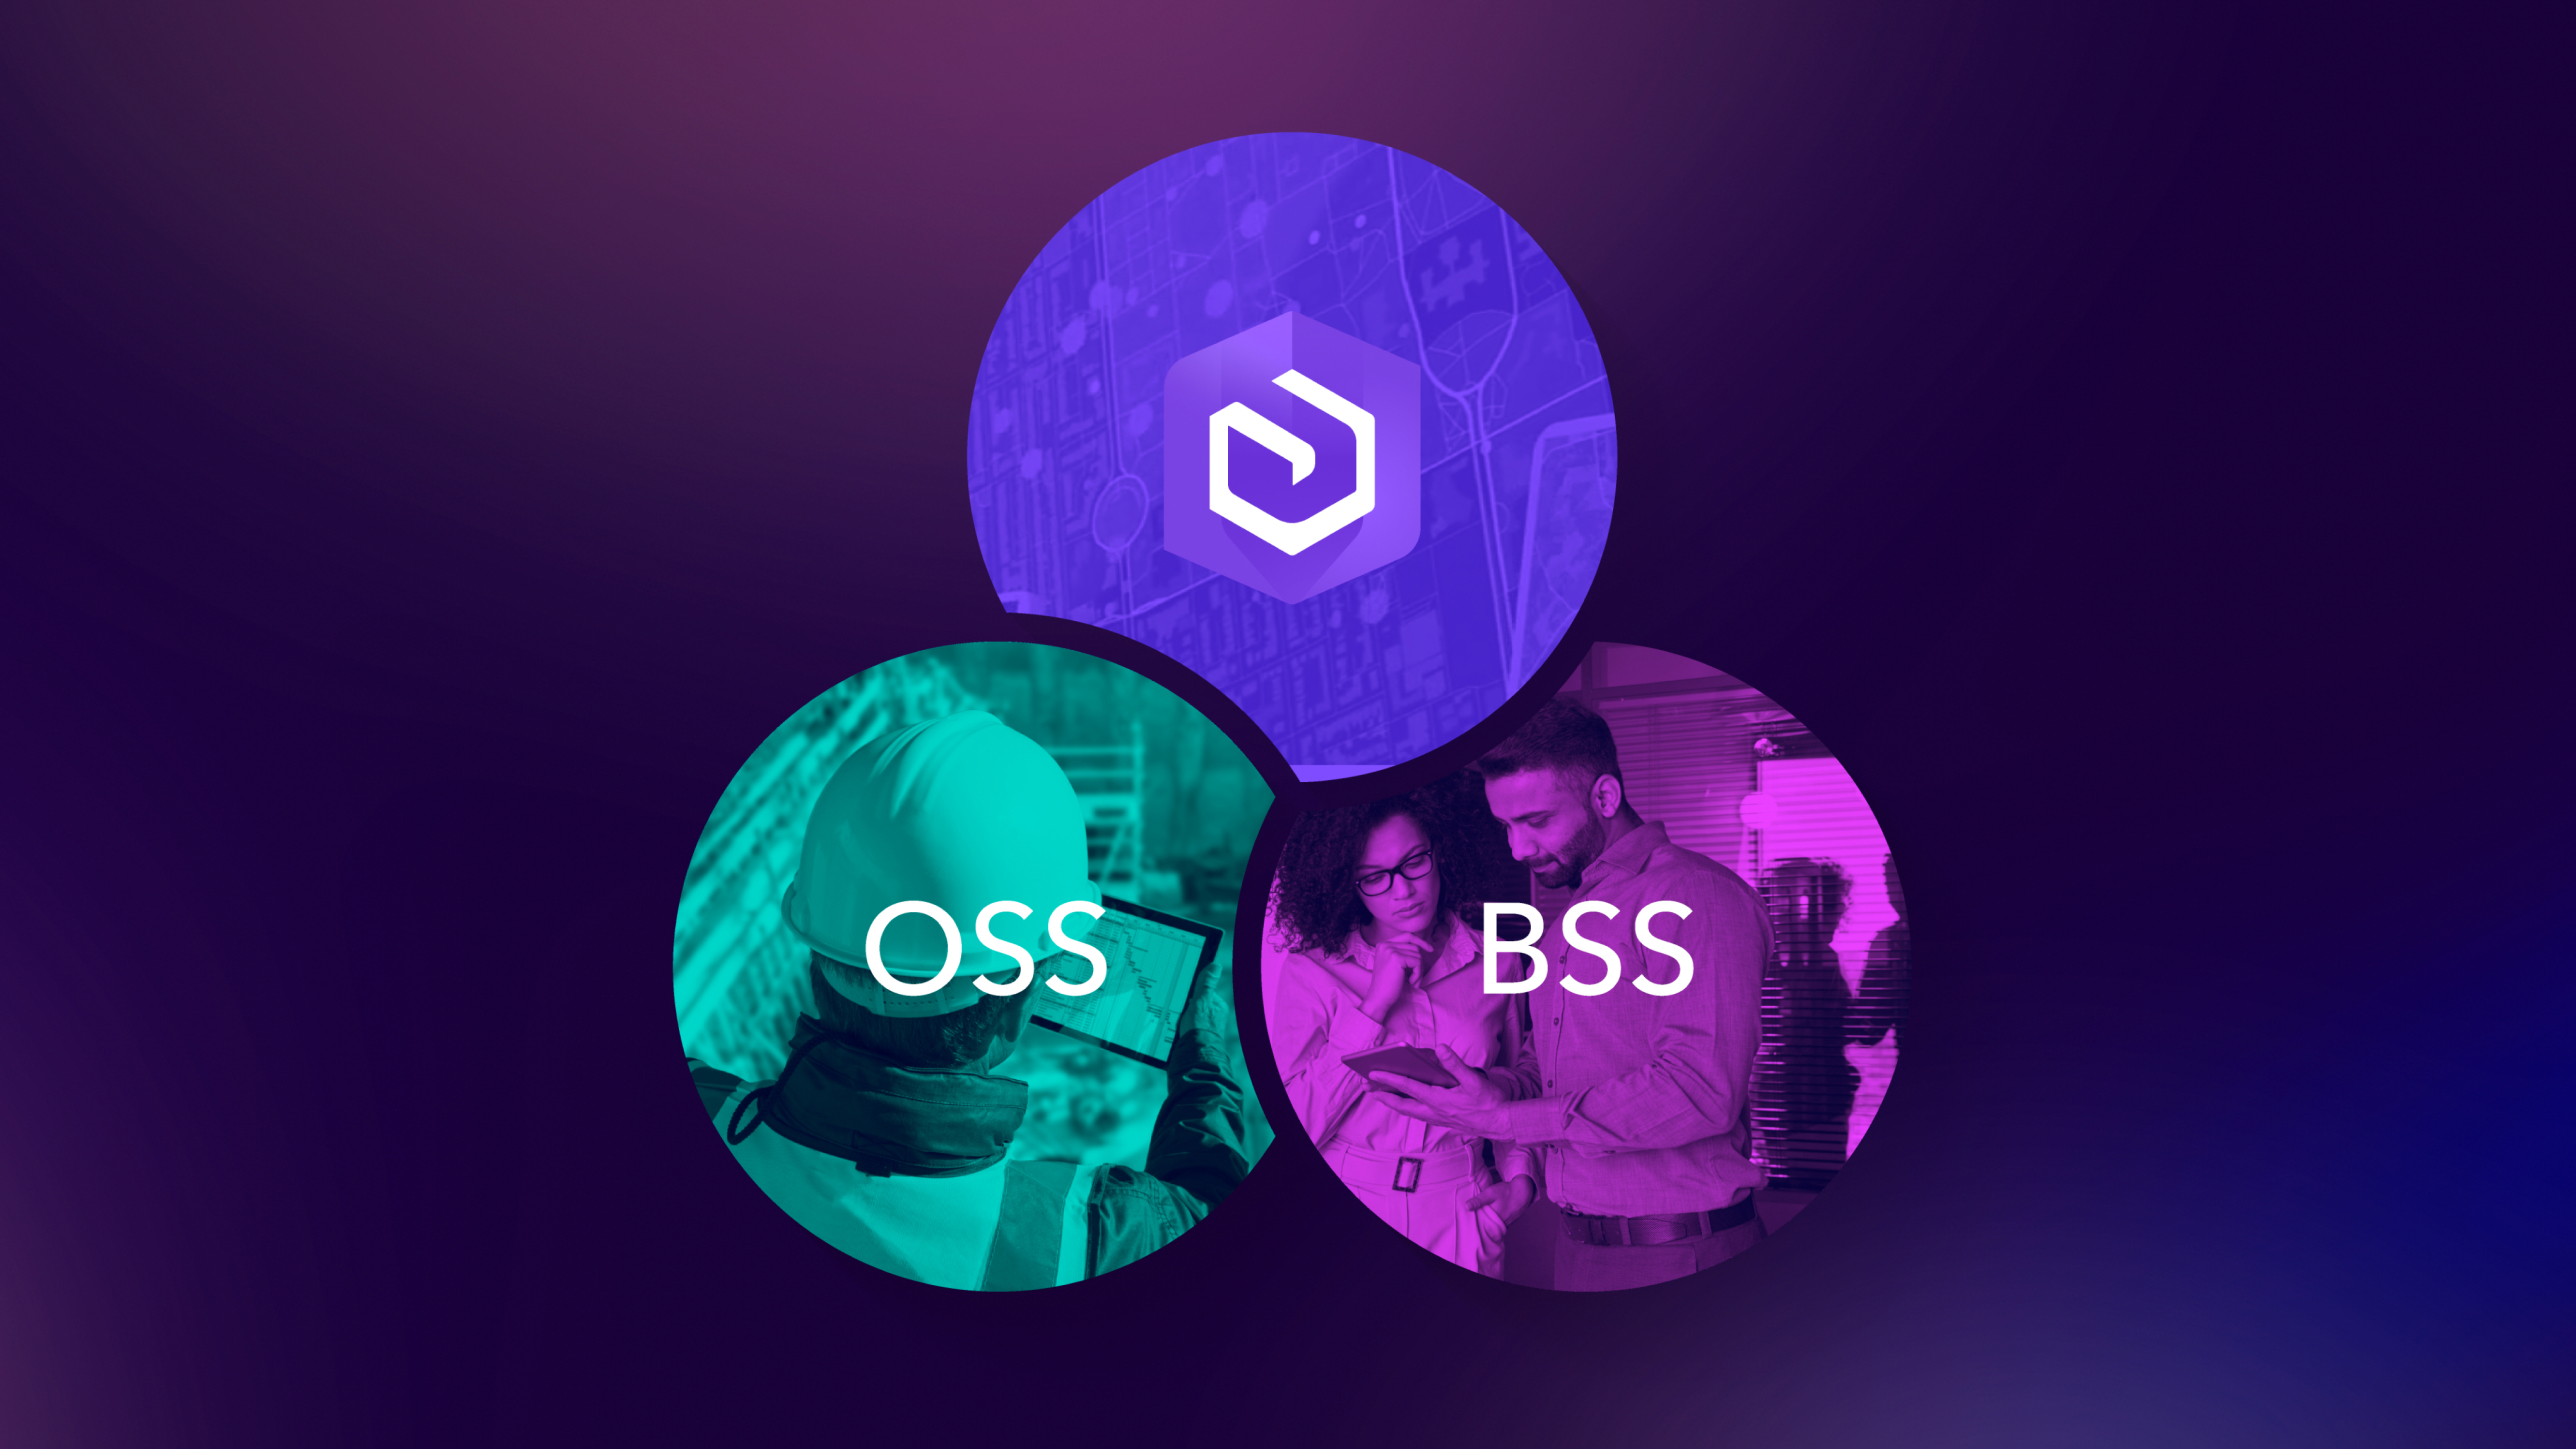 Three intersecting circles: OSS, BSS, and a circular symbol